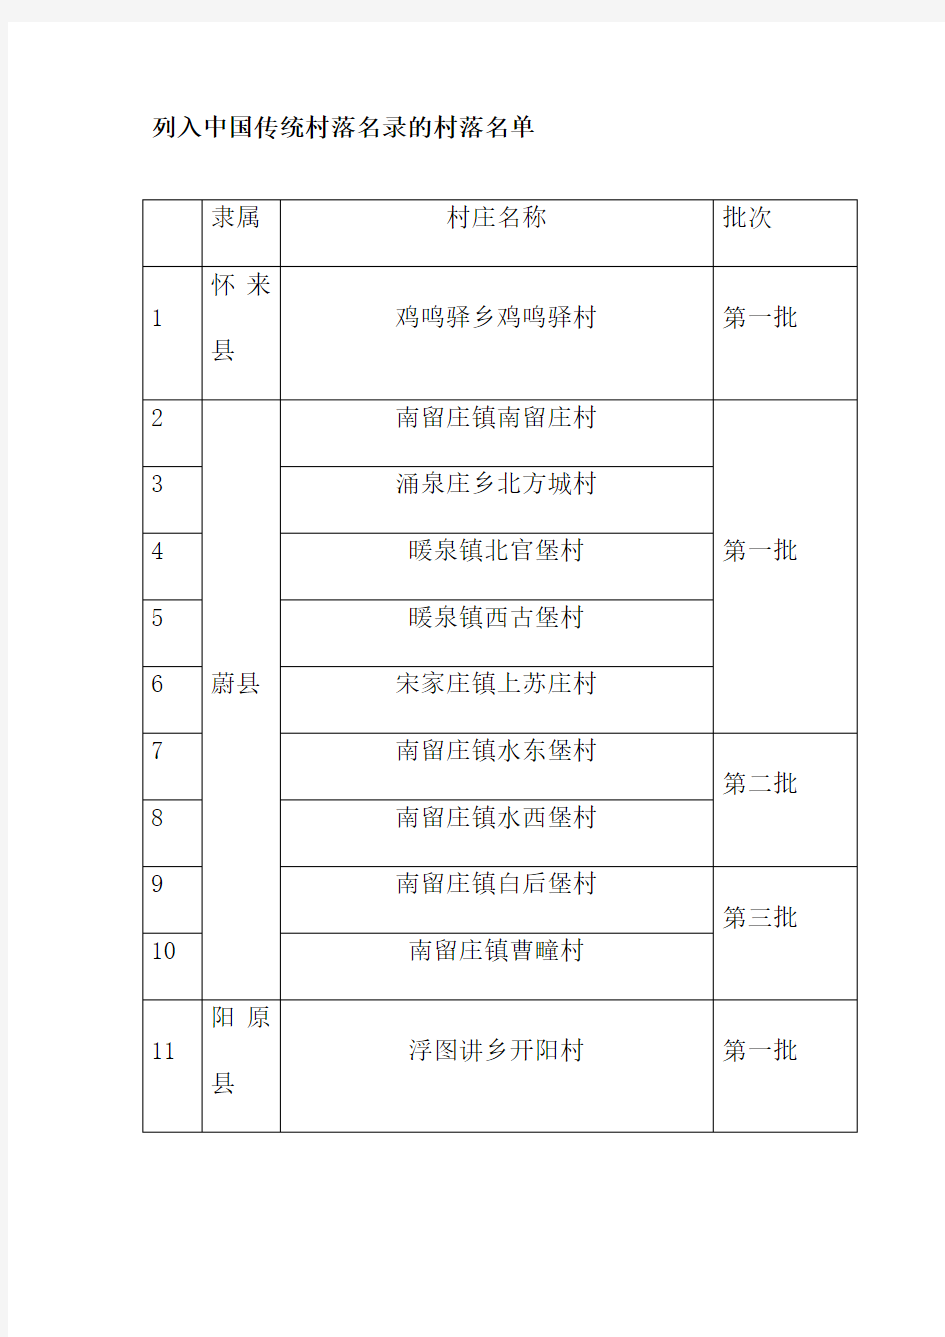 列入中国传统村落名录的村落名单